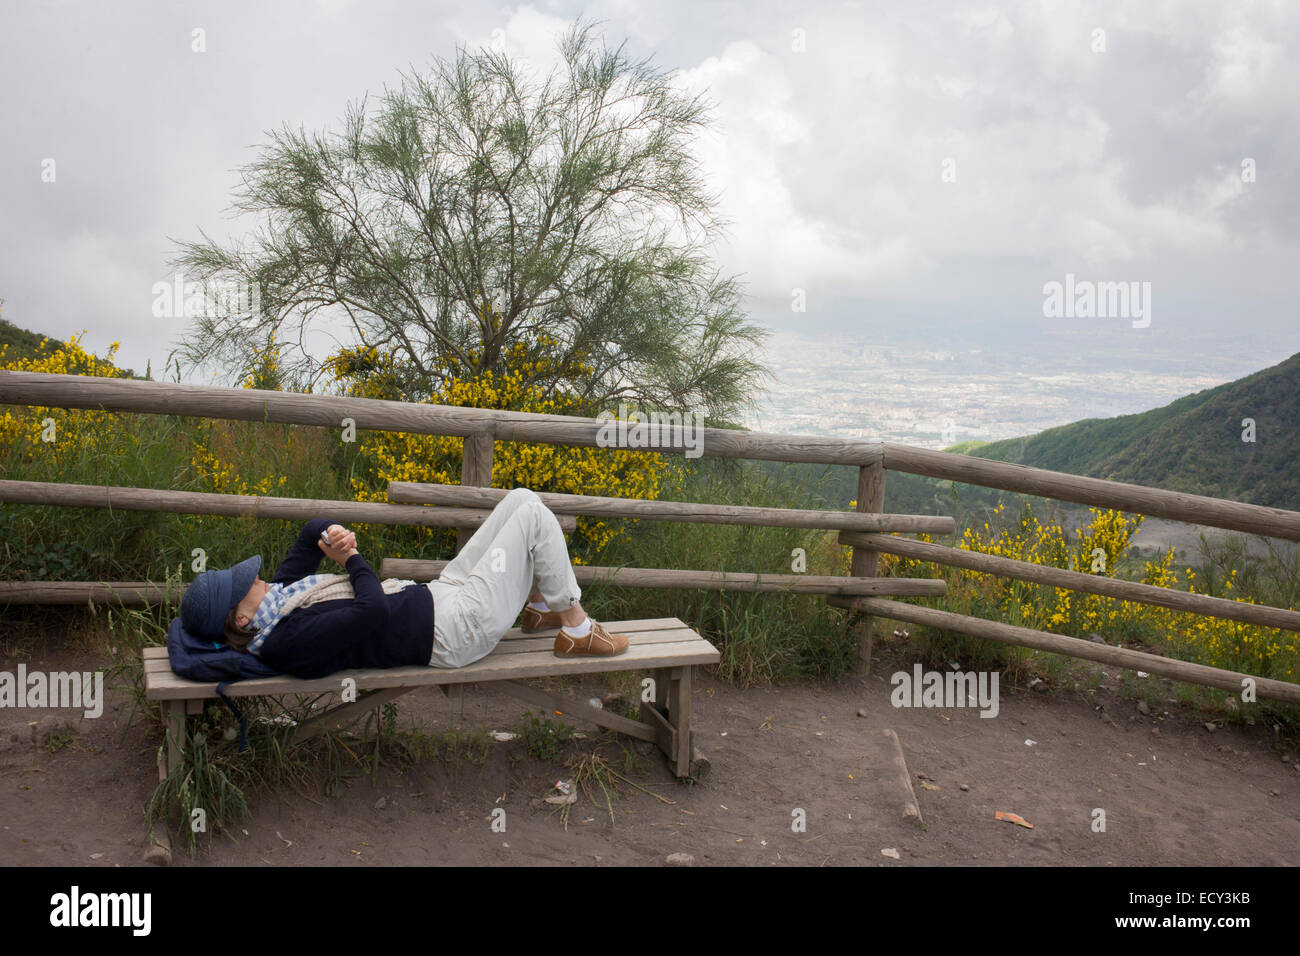 El hombre comprueba smartphone durante la visita al volcán Vesubio. Foto de stock